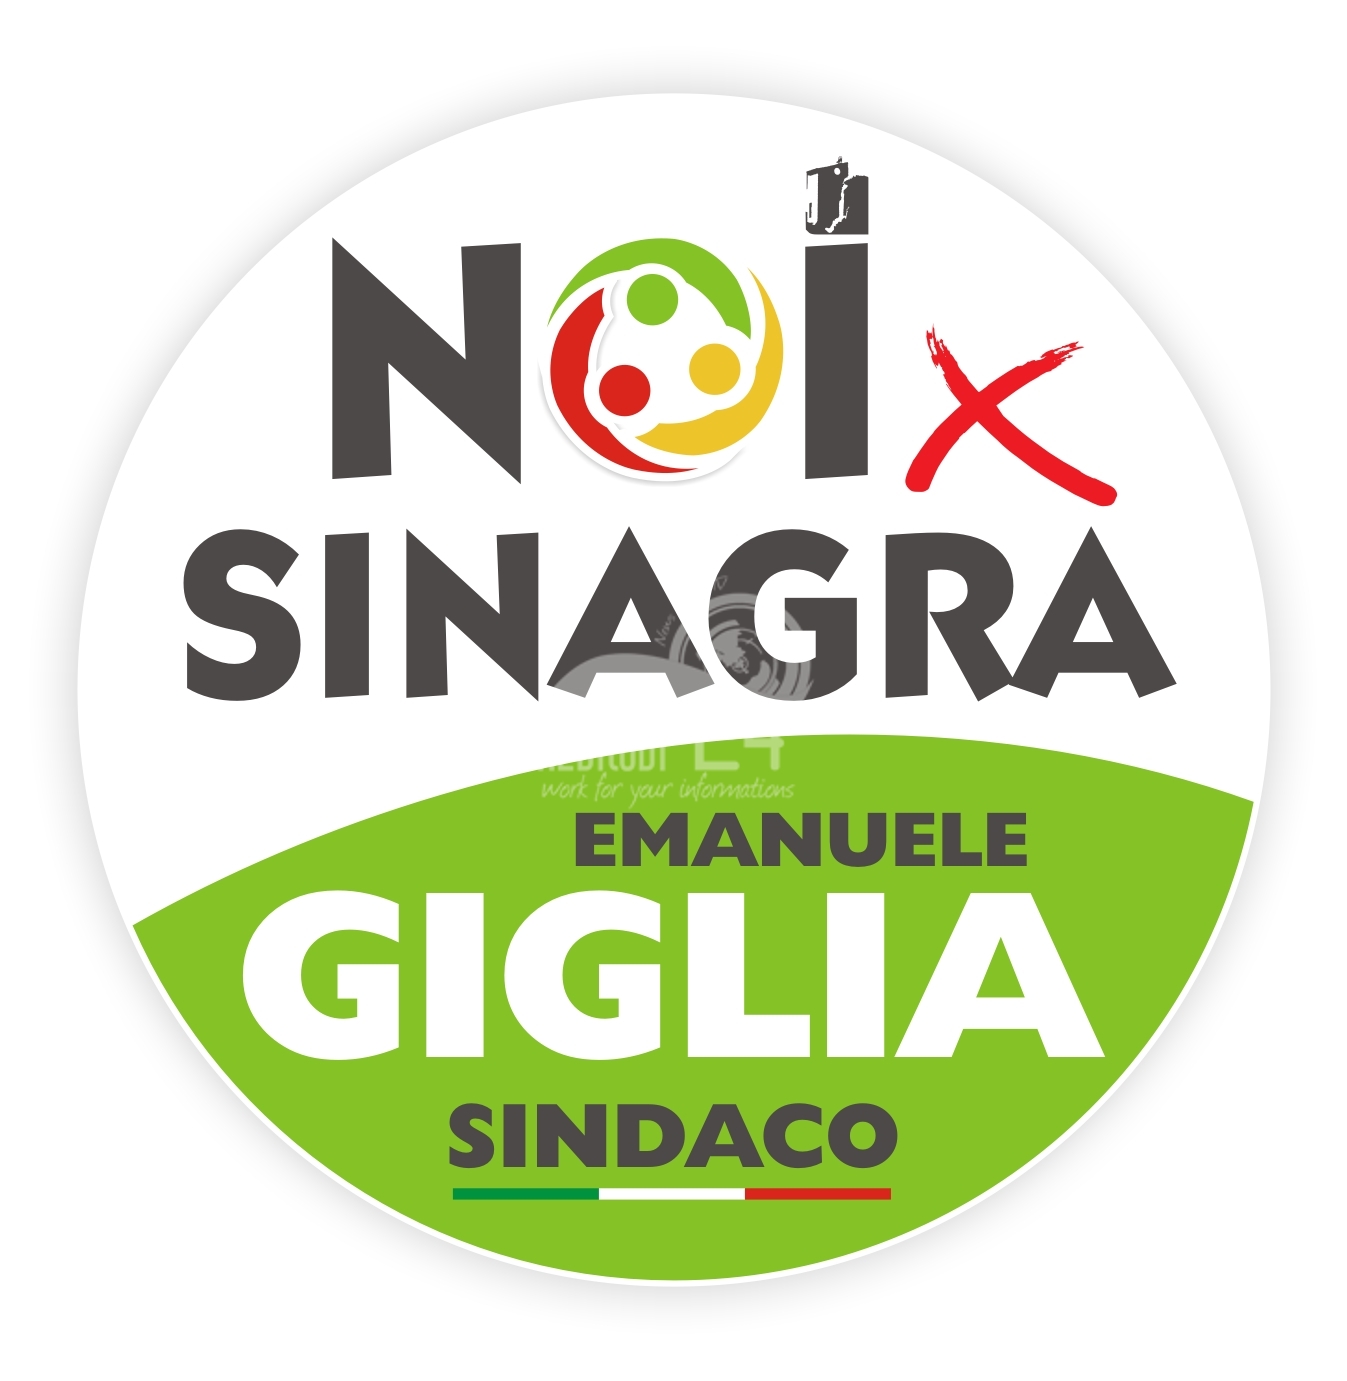 Sinagra – Elezioni 2022: inaugurazione comitato elettorale “Noi Per Sinagra” – Emanuele Giglia Sindaco